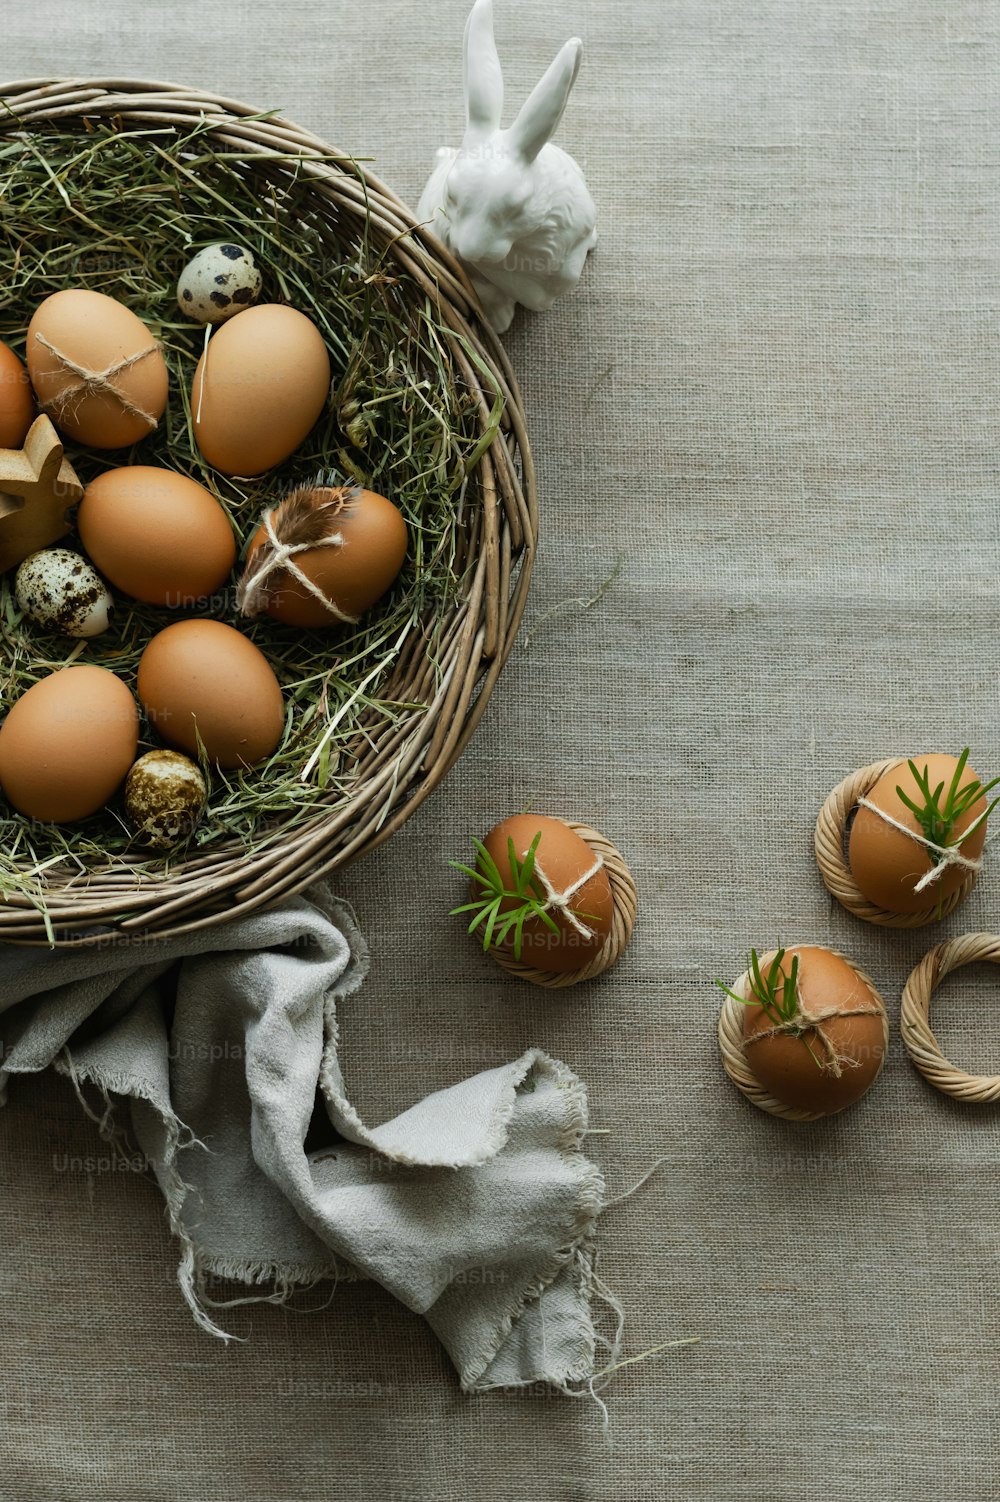 ein Korb gefüllt mit braunen Eiern neben einem weißen Hasen